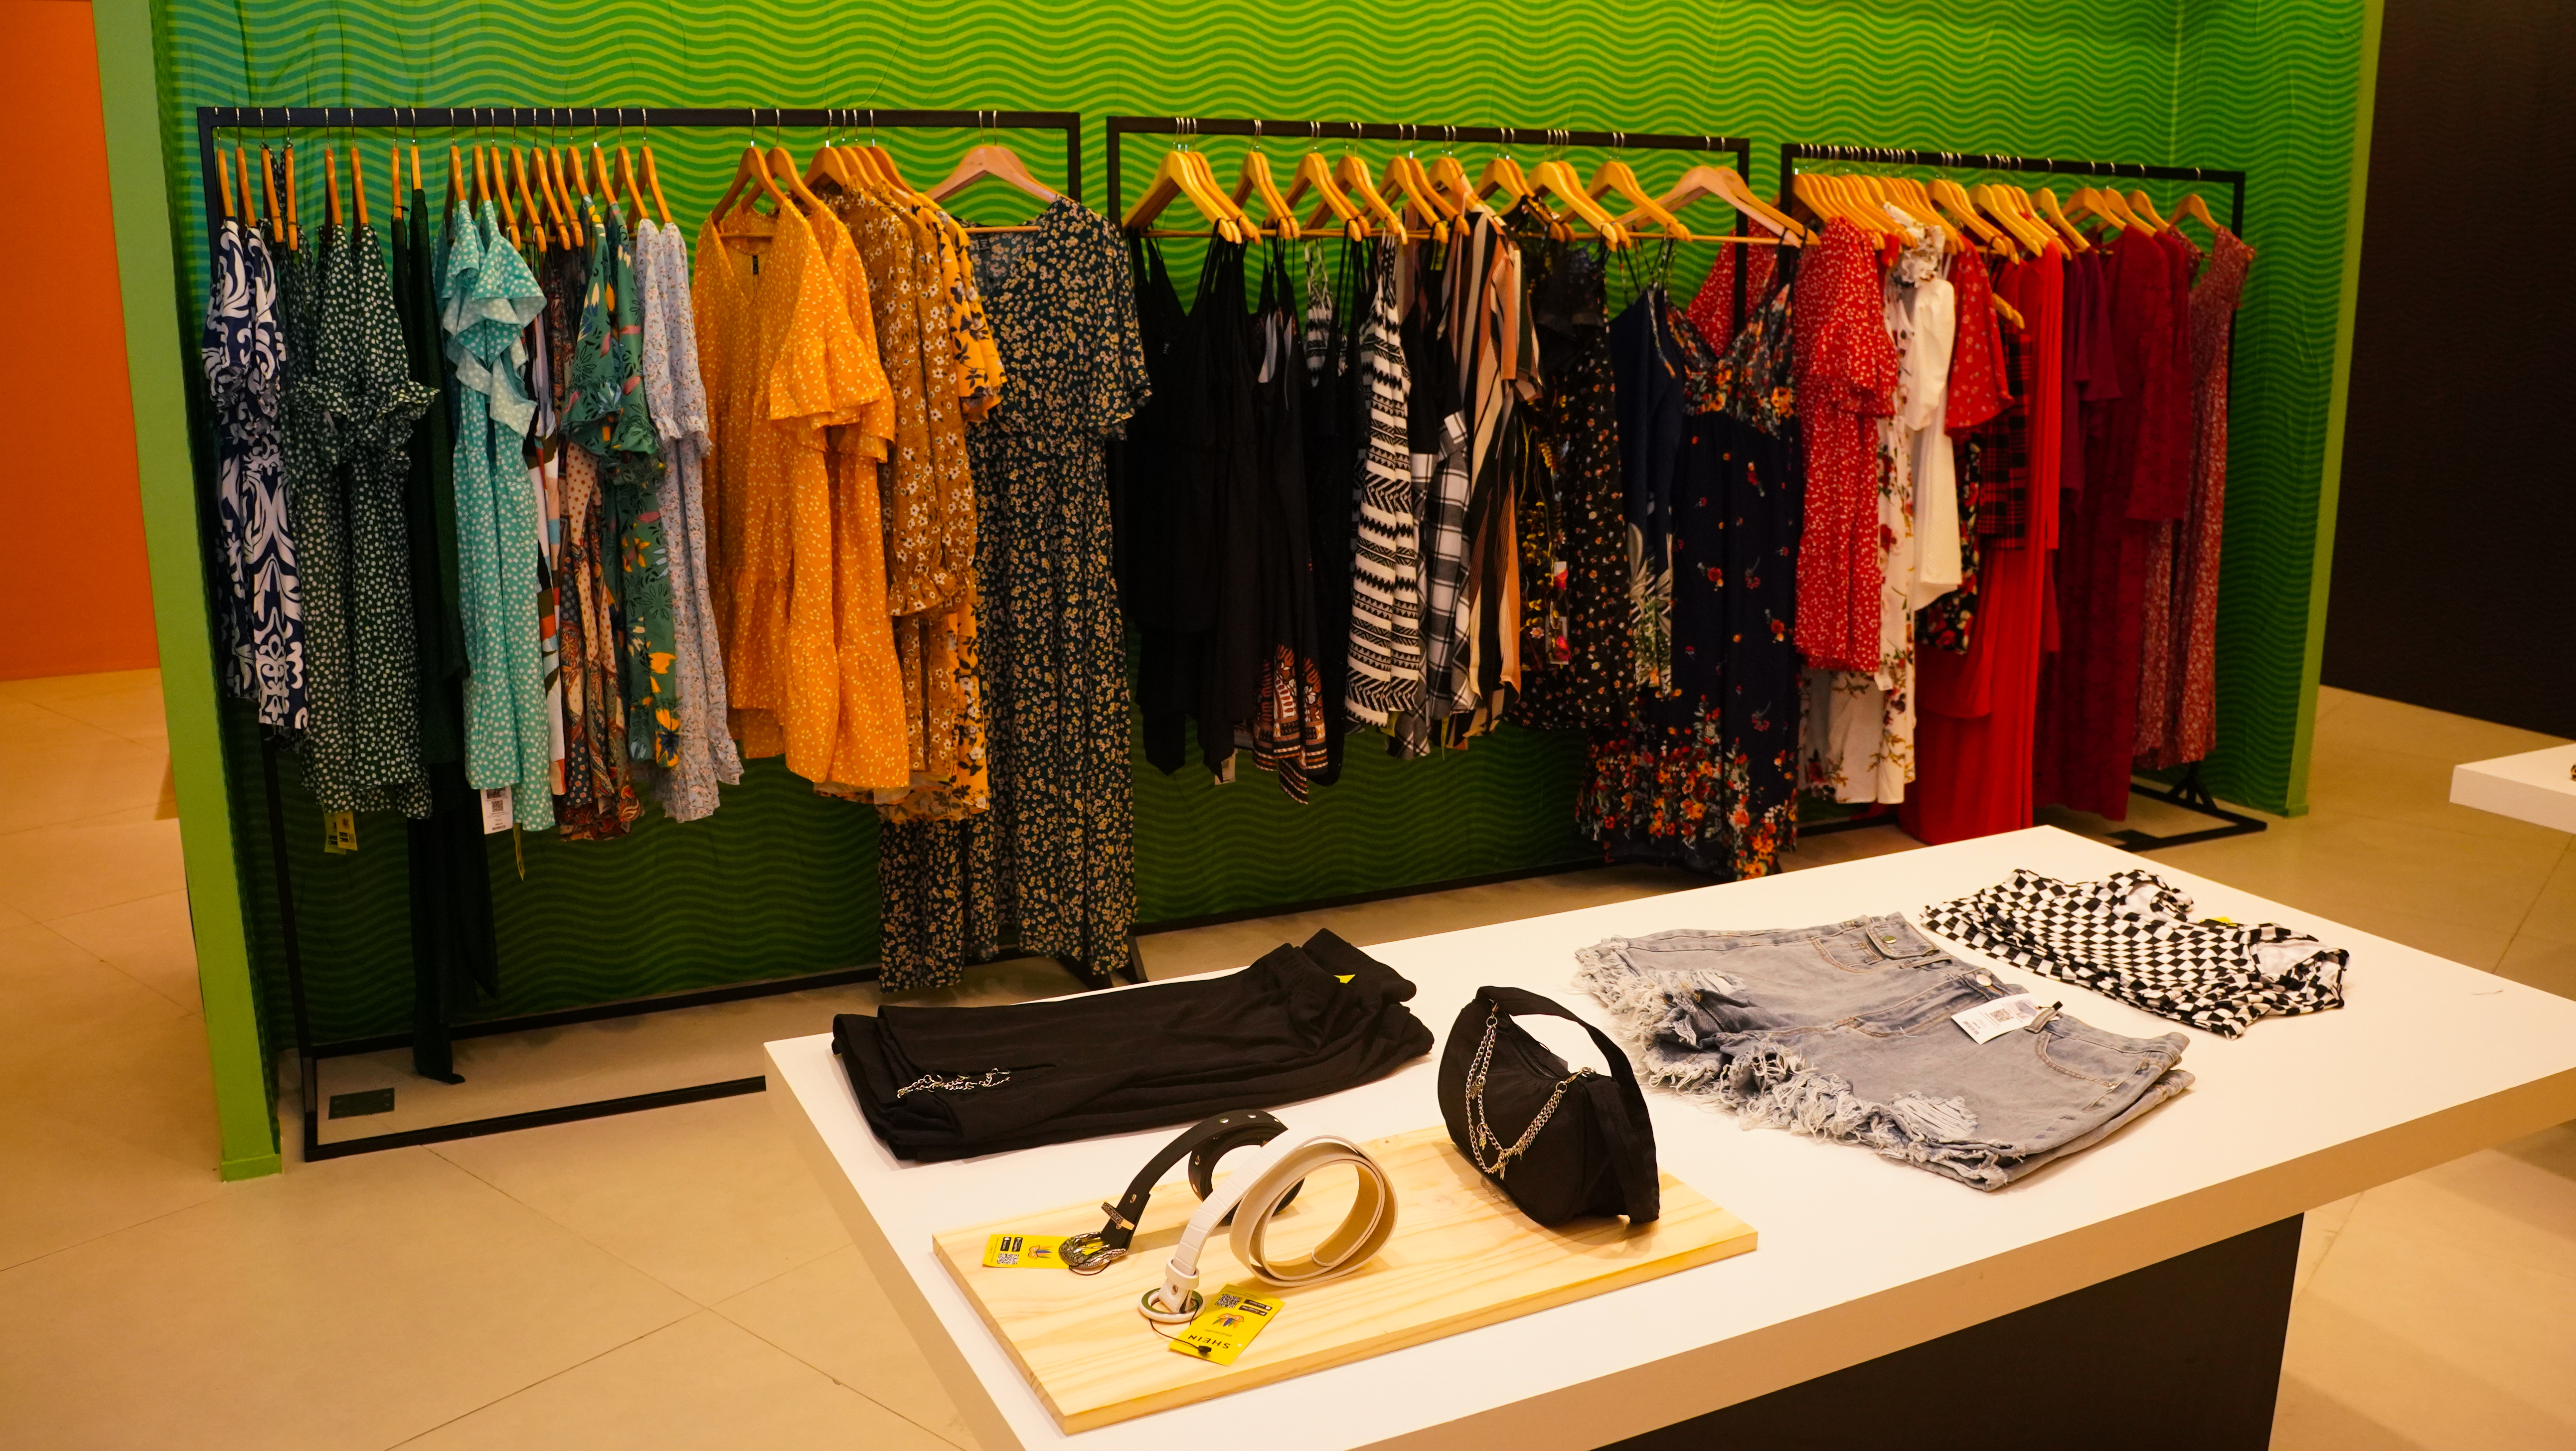 Shein inaugura primeira pop-up store no Brasil e planeja abertura de cinco  novas unidades - Mercado&Consumo